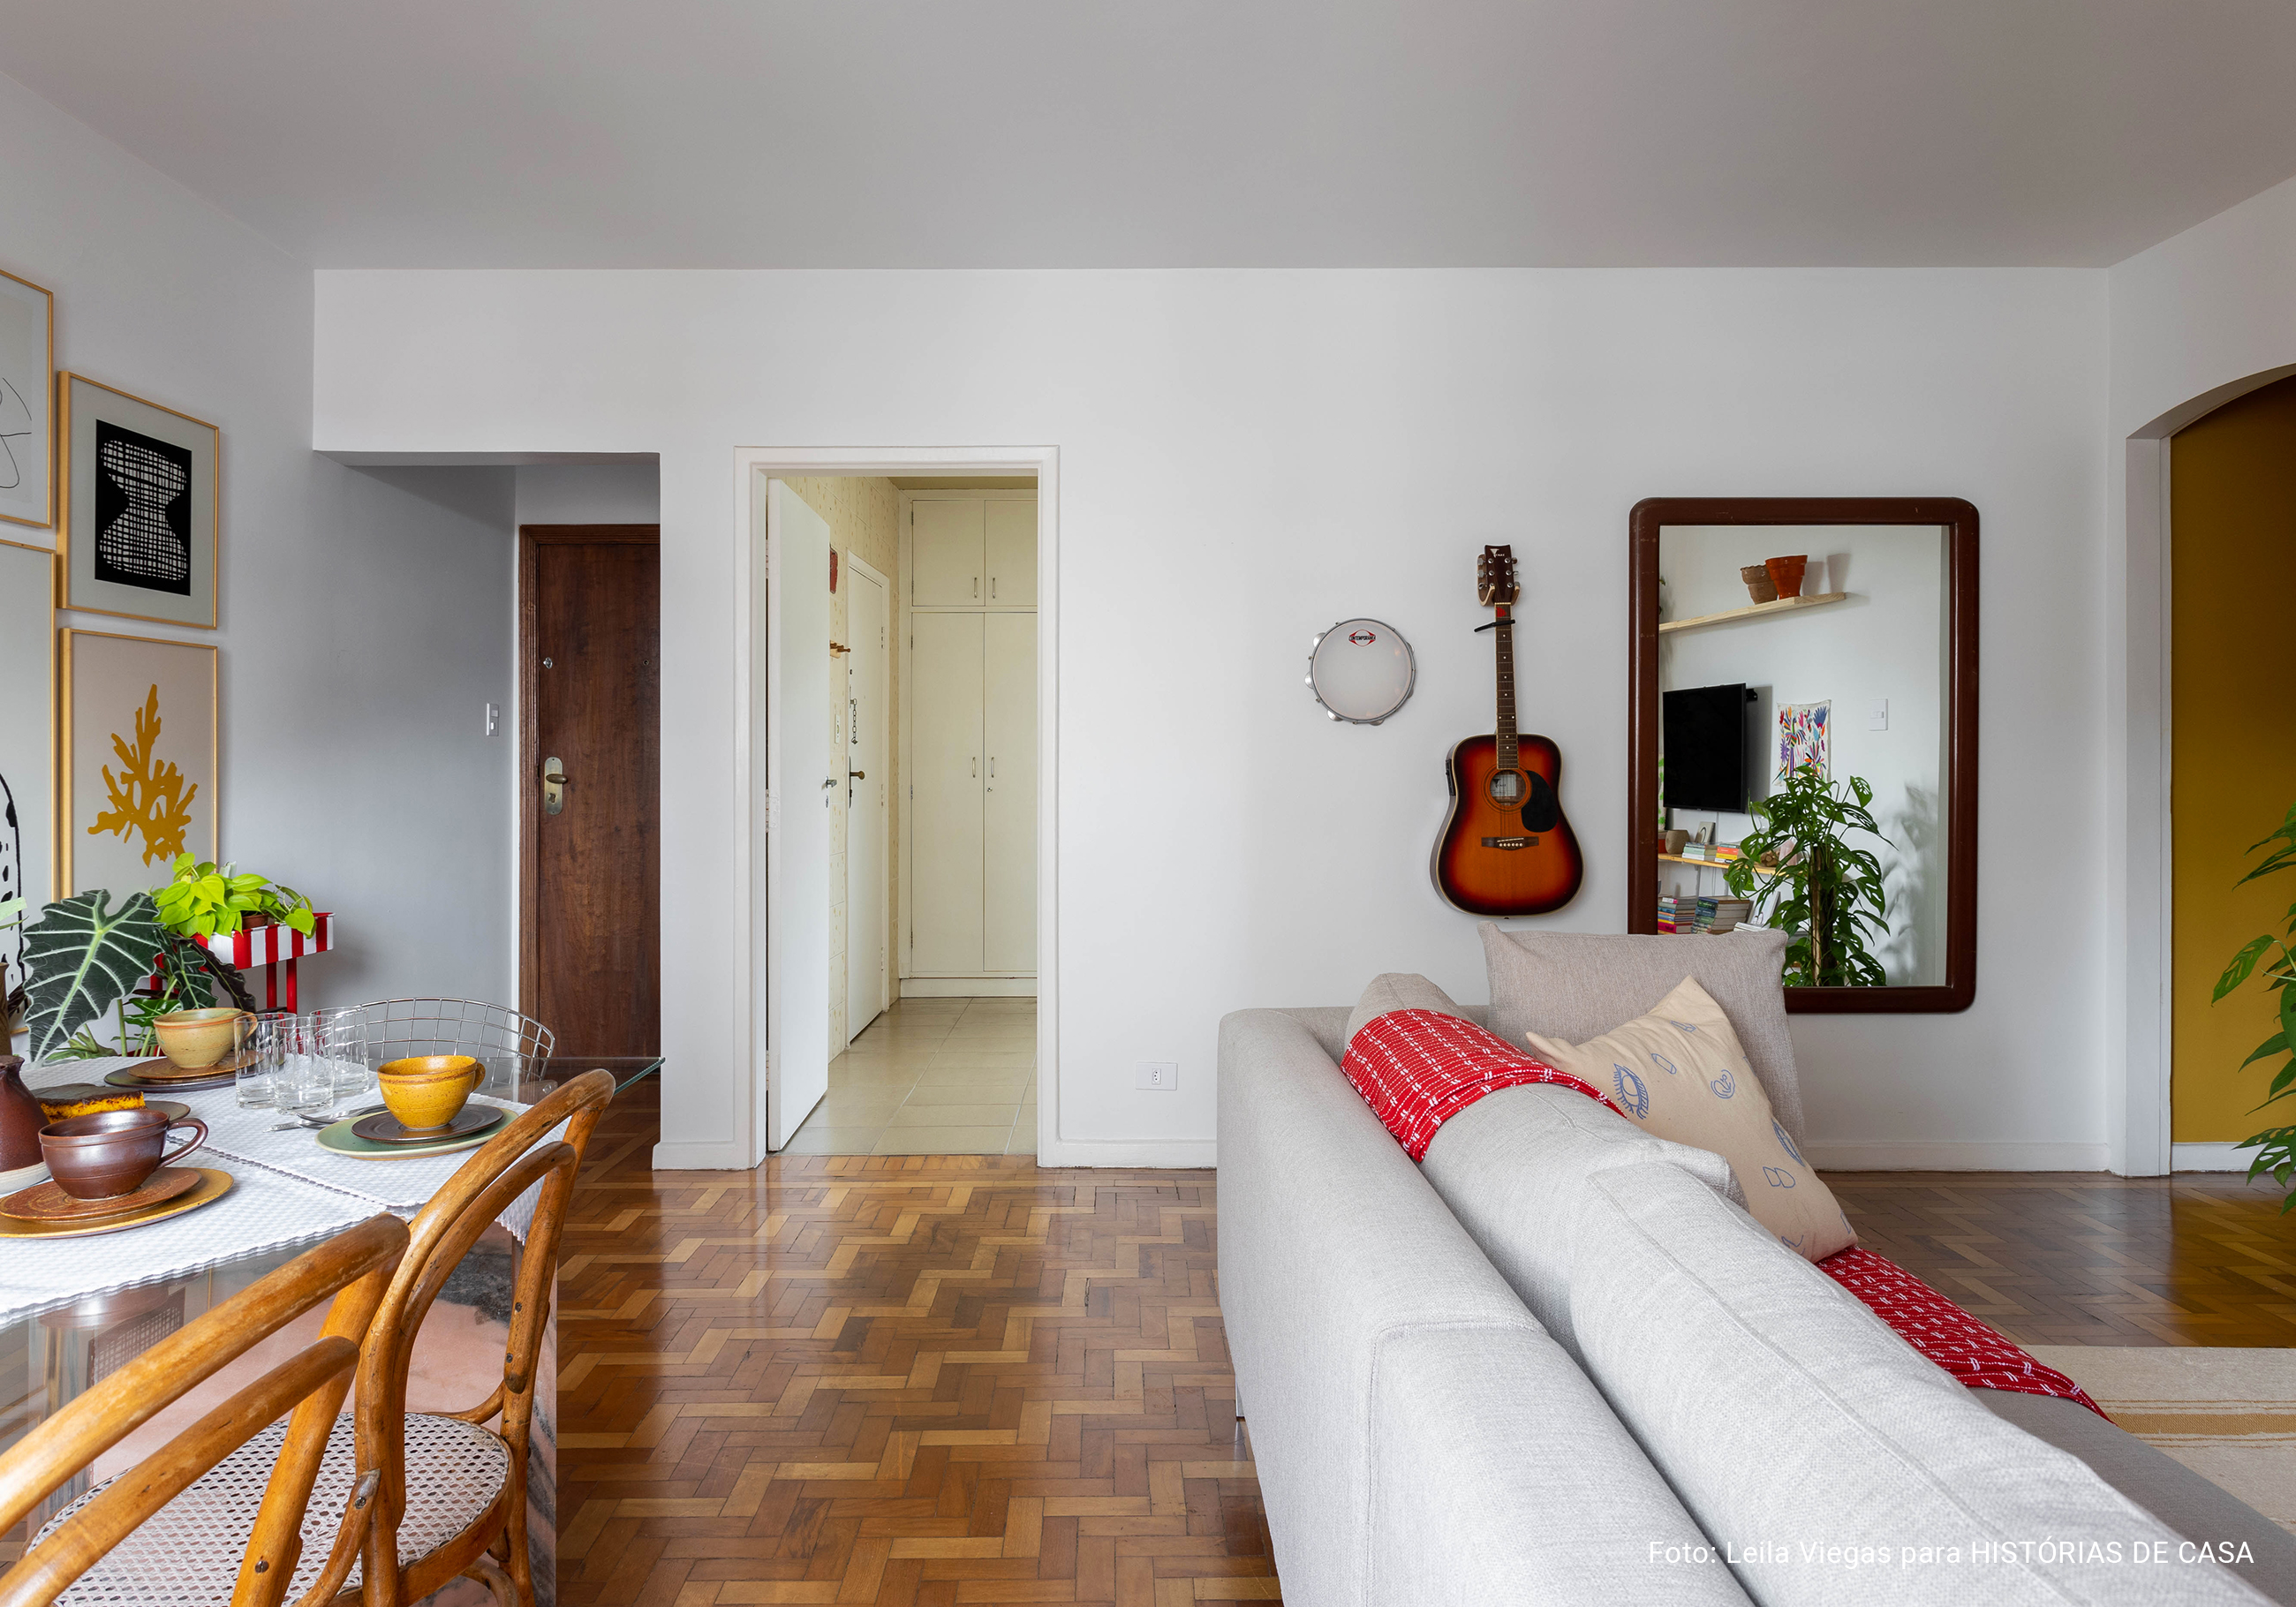 Apartamento com parede de quadros da Boemi, piso de tacos e decoração com móveis garimpados.